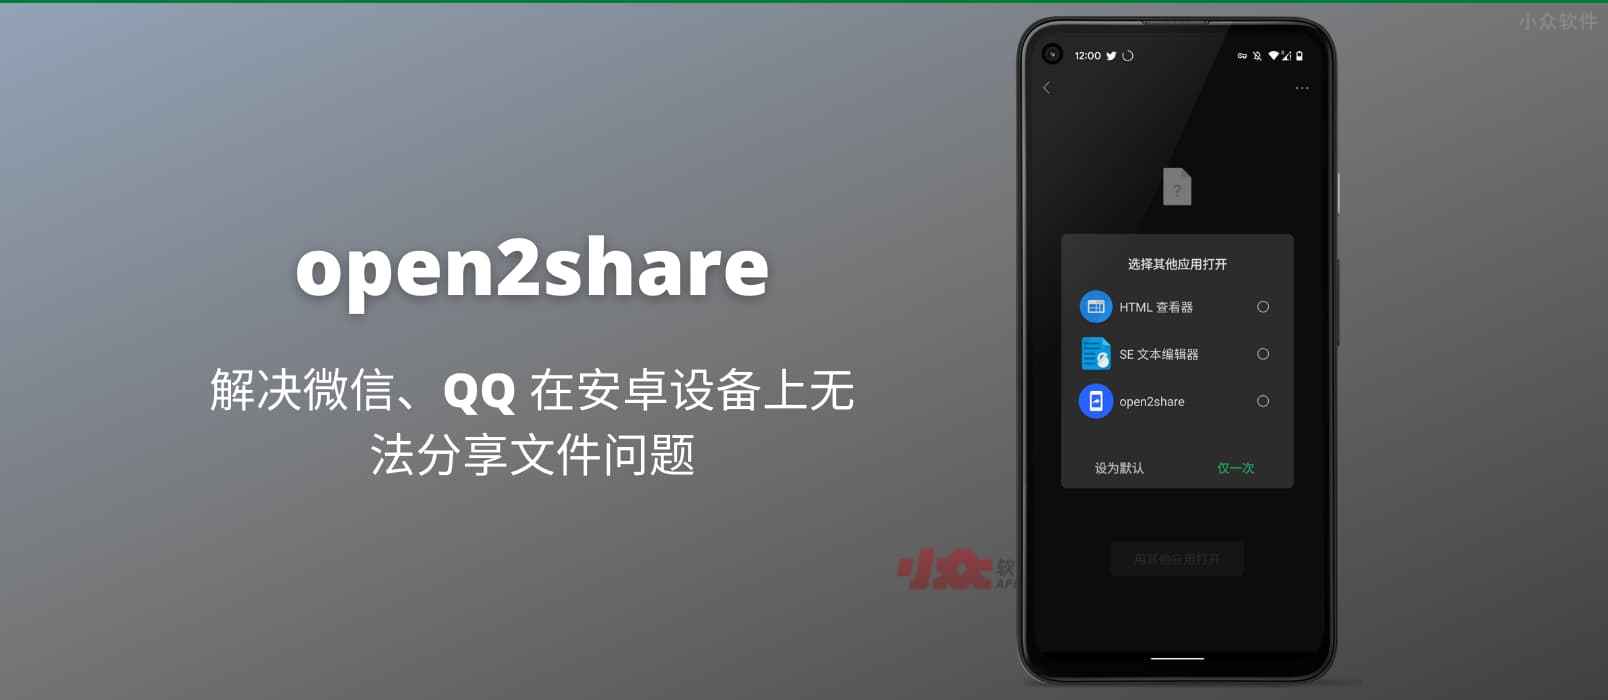 open2share - 解决微信无法分享文件的问题[Android]